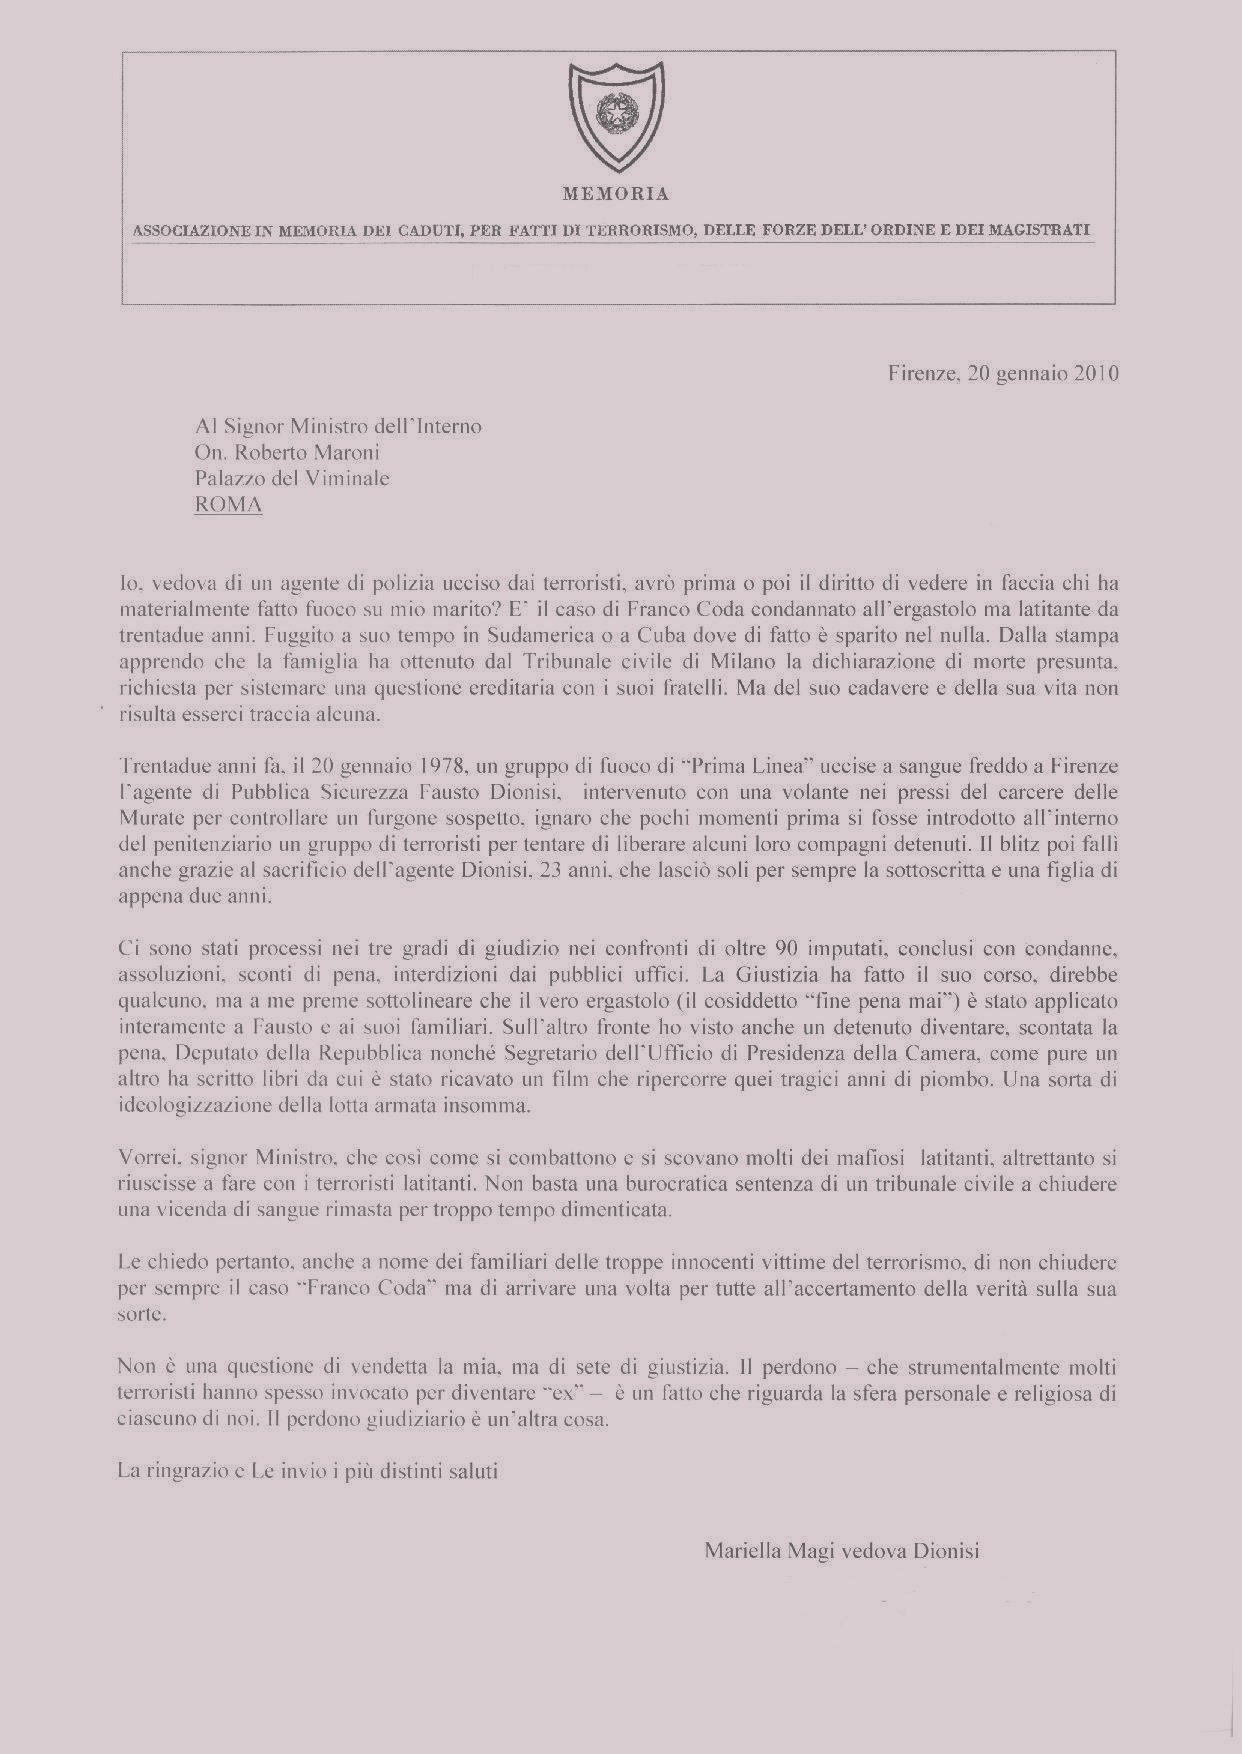 lettera dionisi al ministro maroni 20 gennaio 2010